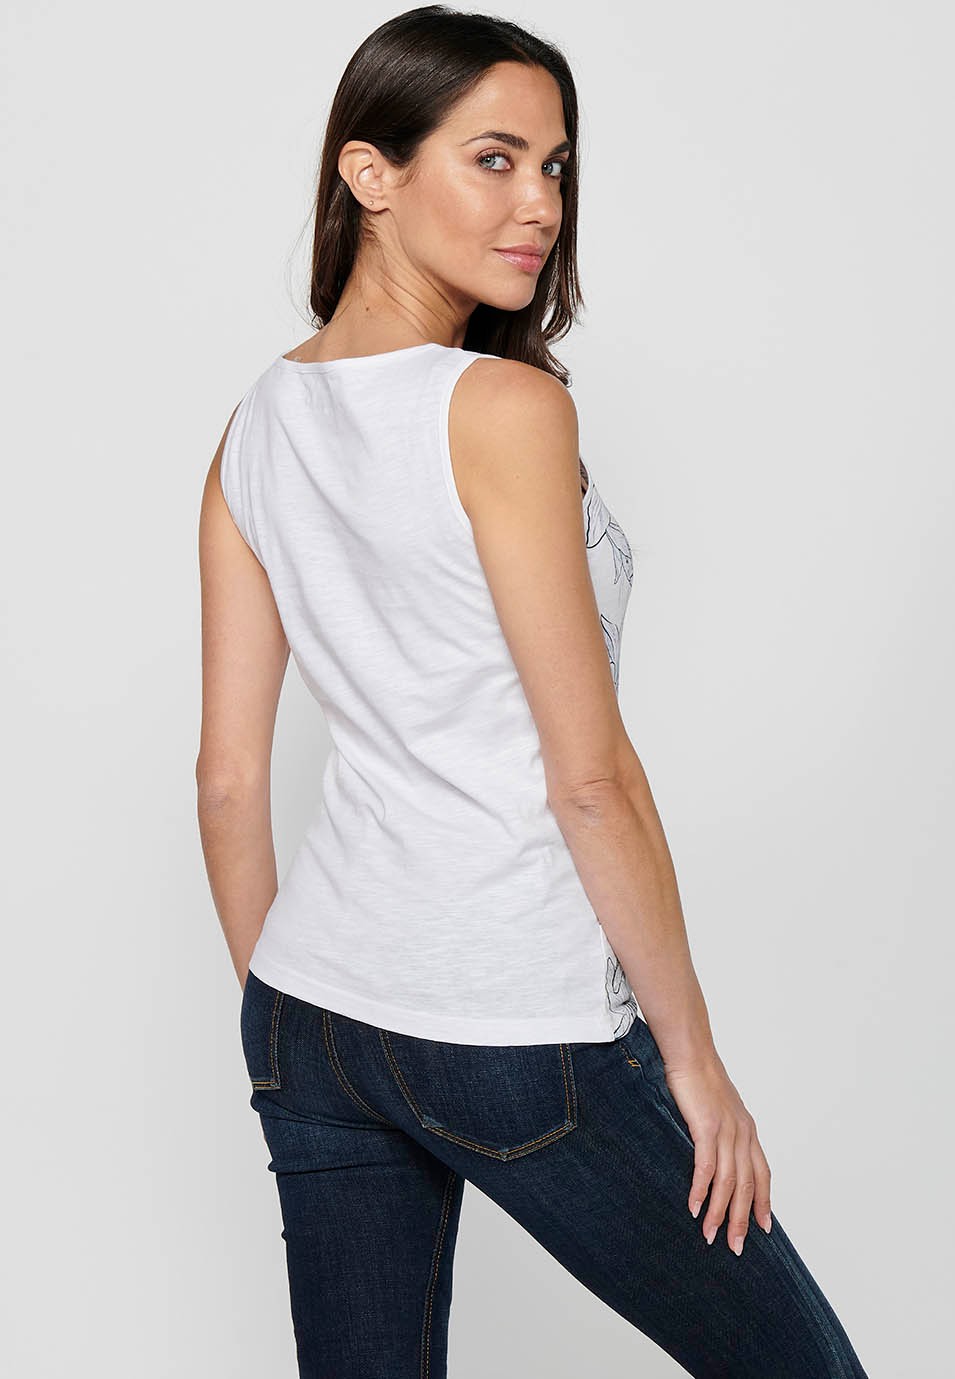 Ärmelloses T-Shirt mit weißem Frontdruck für Damen 4